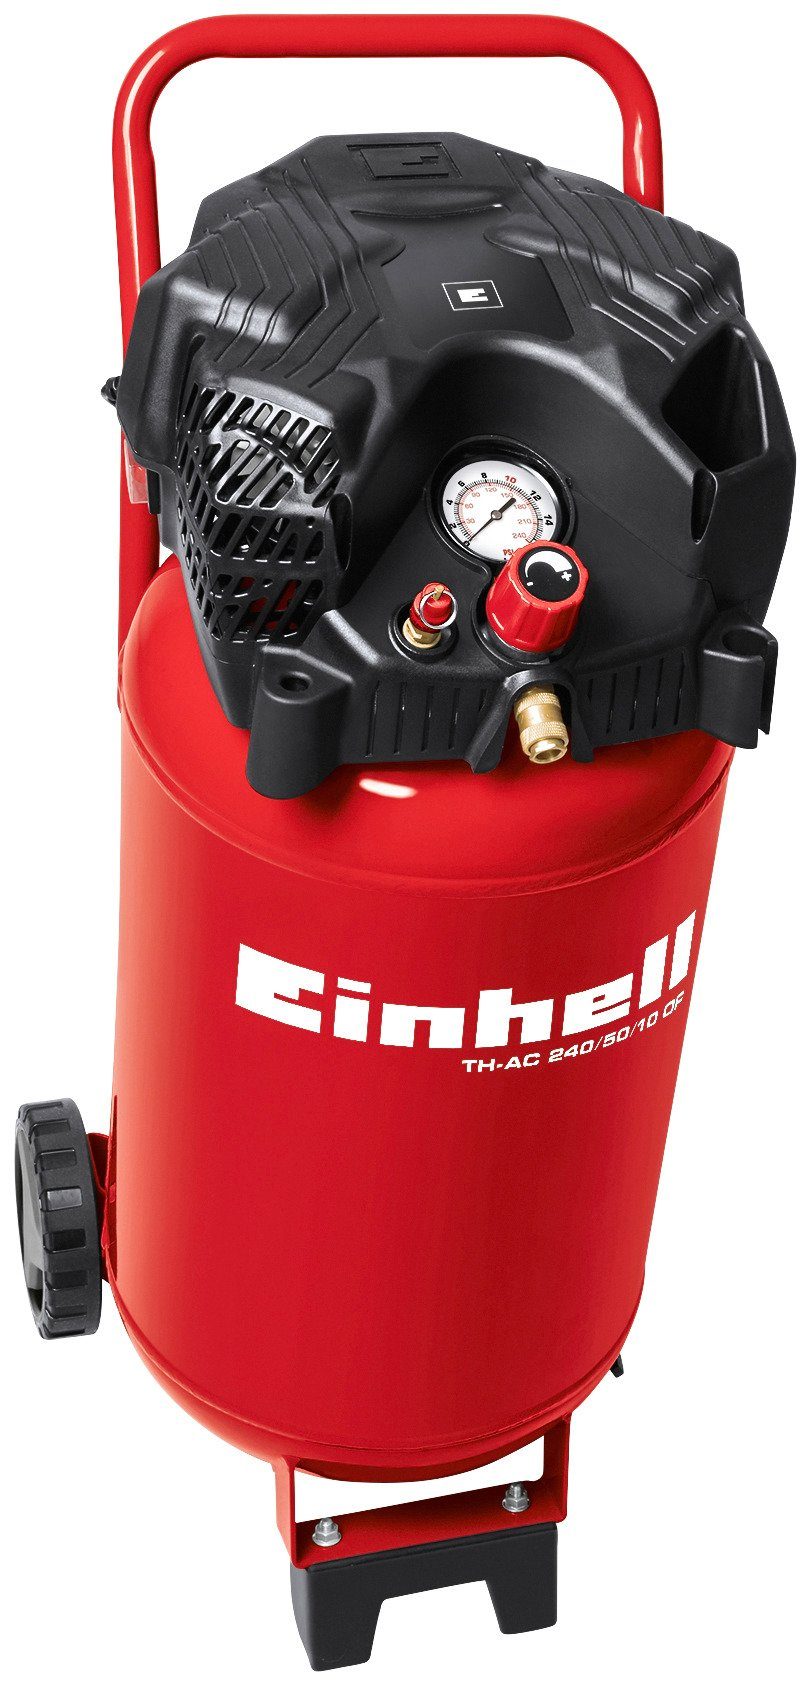 Einhell Kompressor TH-AC 240/50/10 OF, 1500 W, max. 10 bar, 50 l